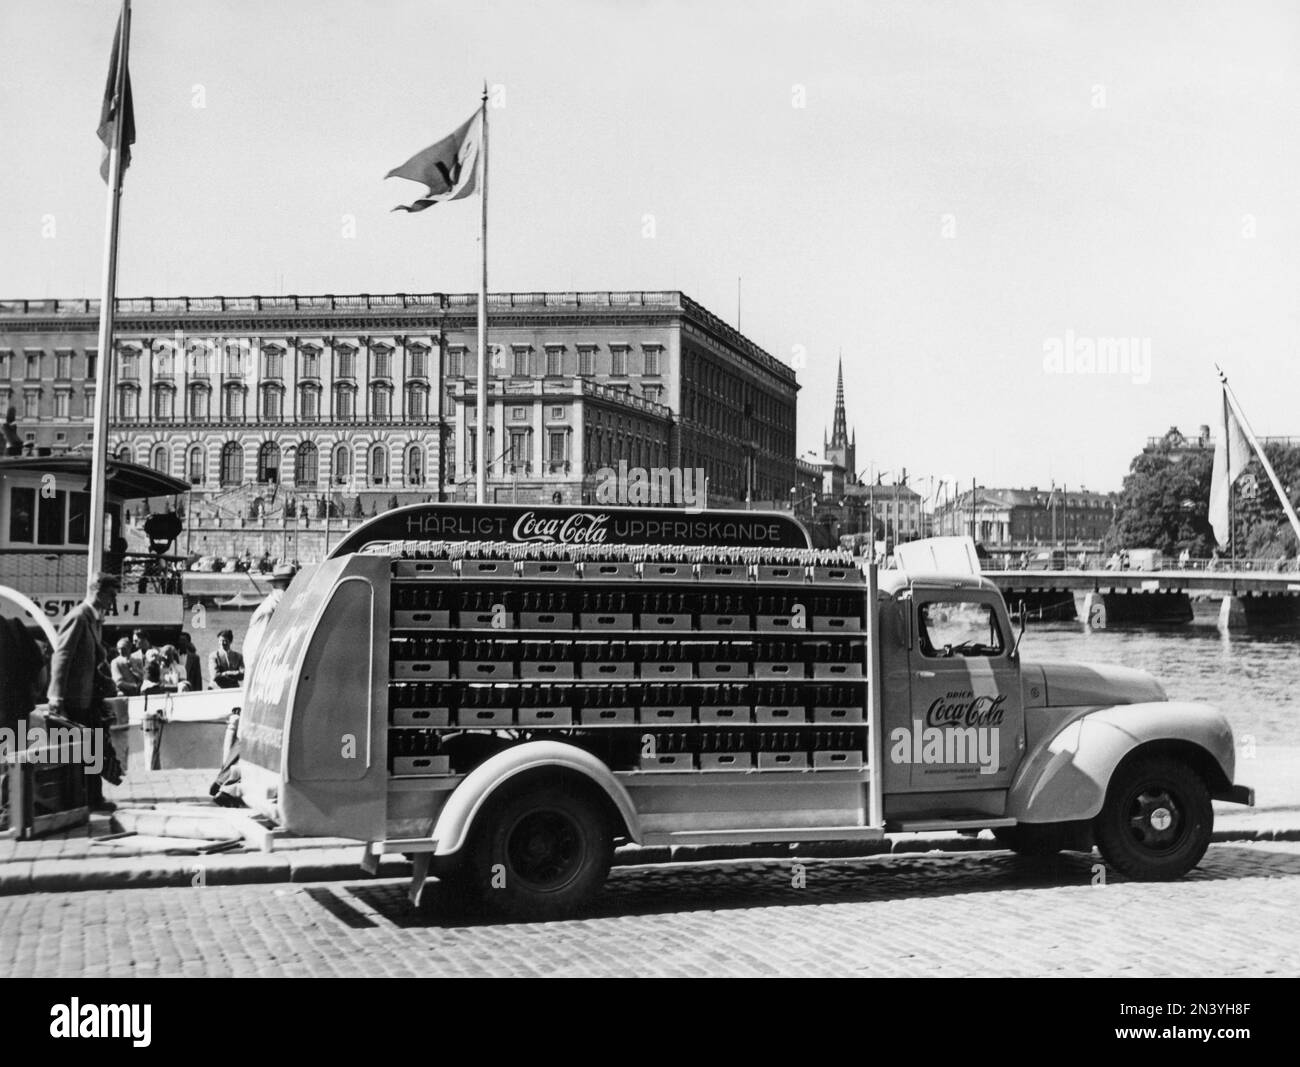 Coca Cola in den 1950er. Am 1. januar 1953 durfte Coca-Cola erstmals in Schweden hergestellt und verkauft werden; zuvor war der Verkauf in Schweden beschränkt, da der Coca-Cola-Gehalt verbotene Stoffe wie Phosphorsäure und Koffein enthielt. Einer der ersten Lieferwagen der Brauerei Mineralvattenfabriken Tre Kronor mit Coca-Cola-Flaschen, die in Stockholm mit dem königlichen Schloss im Hintergrund abgebildet ist. Volvo-Lkw, Modell L34, modifiziert und rot lackiert für den exklusiven Einsatz bei Coca-Cola-Lkw. Coca-Cola war früh dran mit Werbung für ihre Fahrzeuge. Schweden 195 Stockfoto